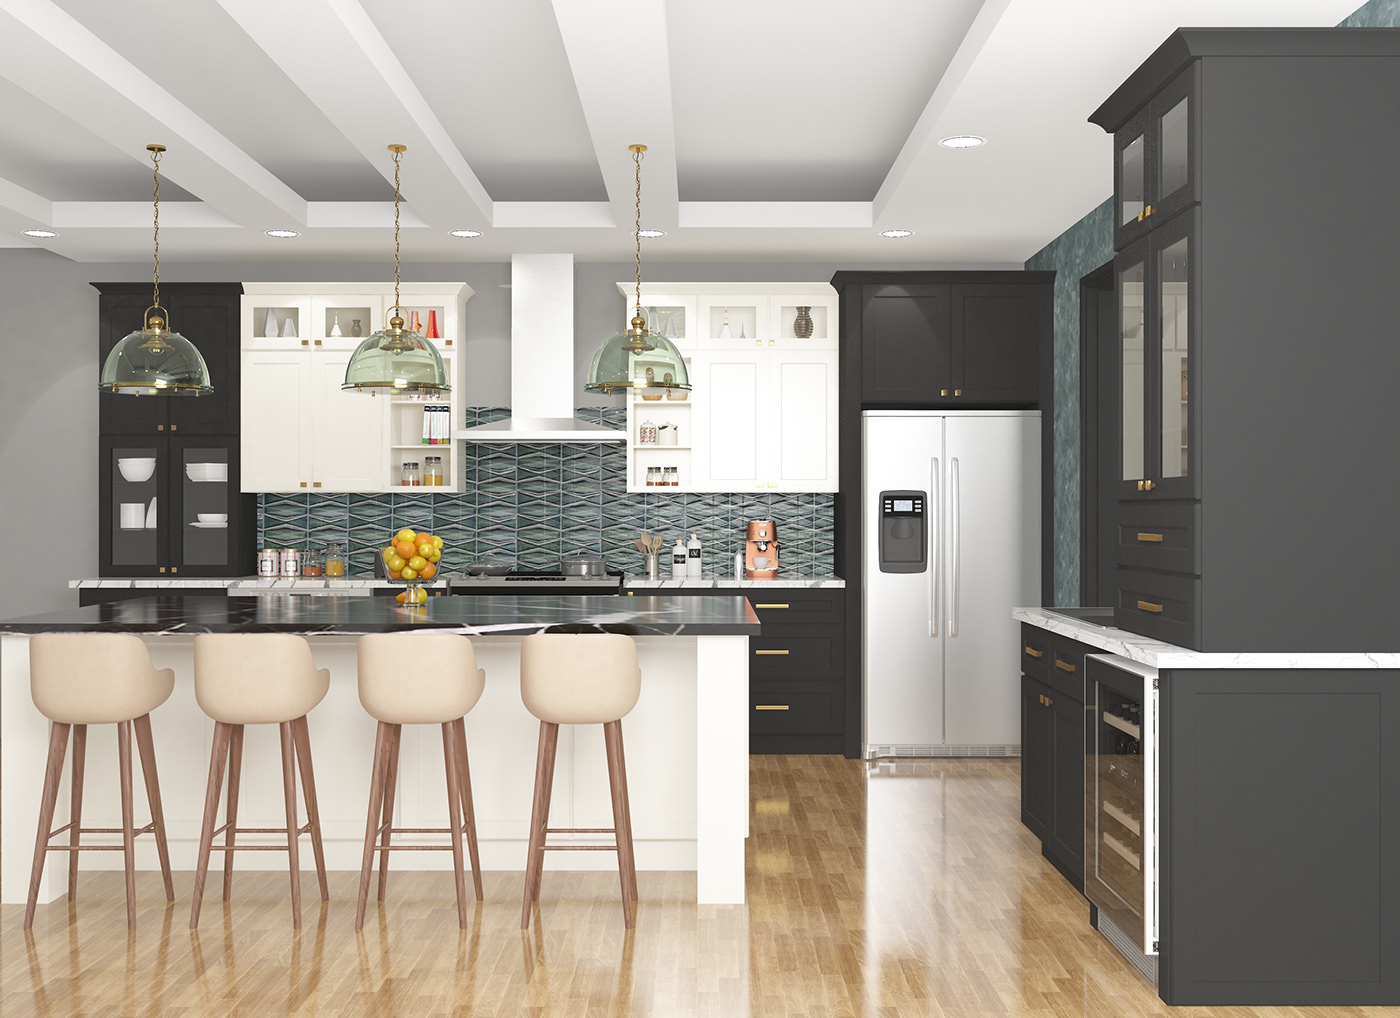 3D architecture Interior kitchen Render visualization vray